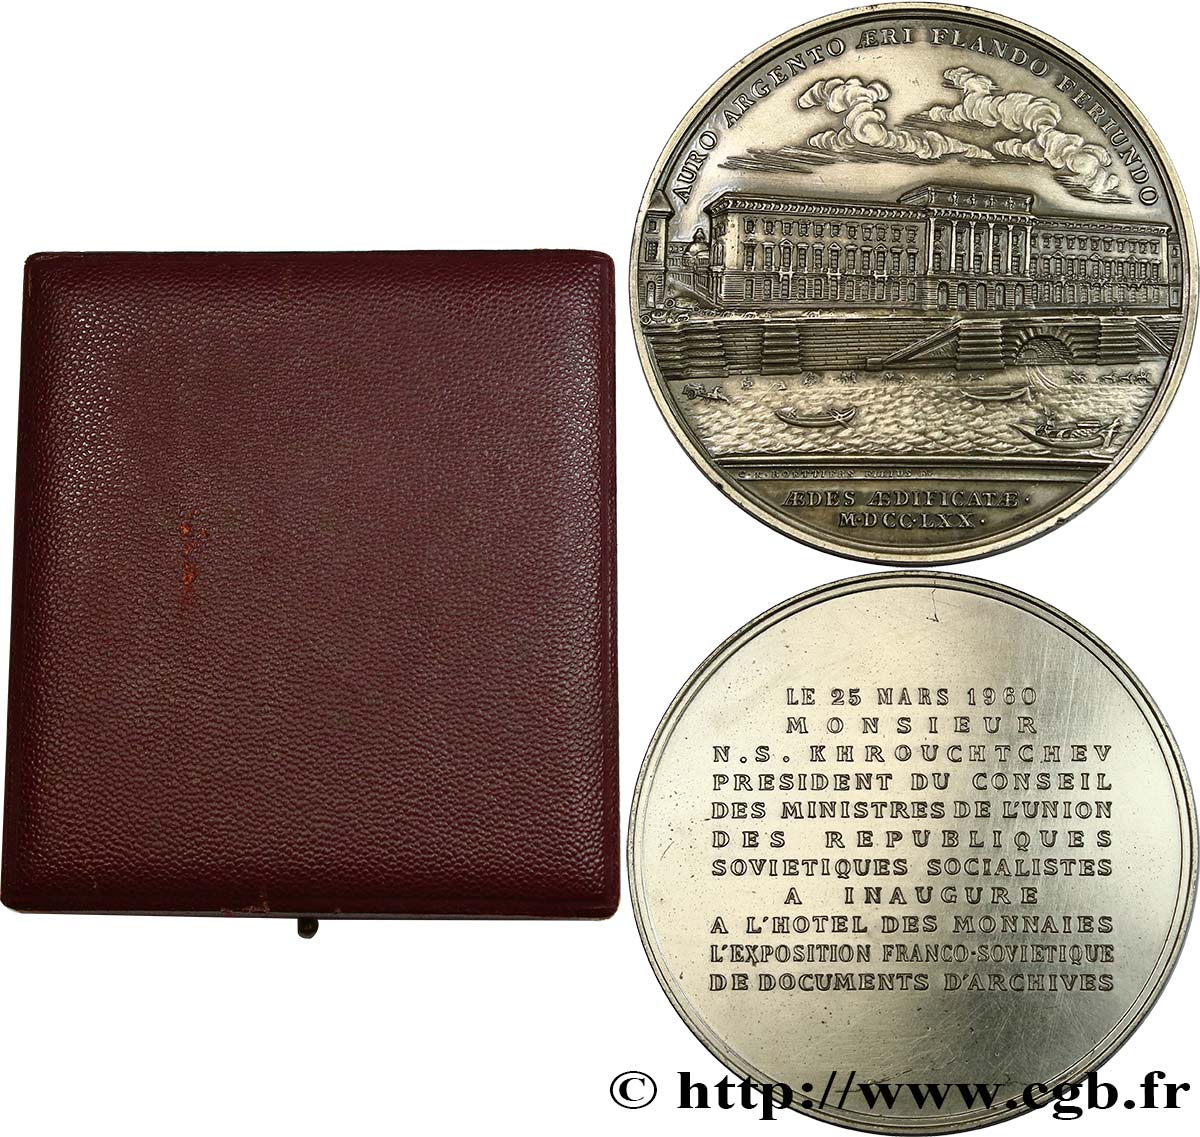 FUNFTE FRANZOSISCHE REPUBLIK Médaille pour la visite de la Monnaie, exposition franco-soviétique VZ